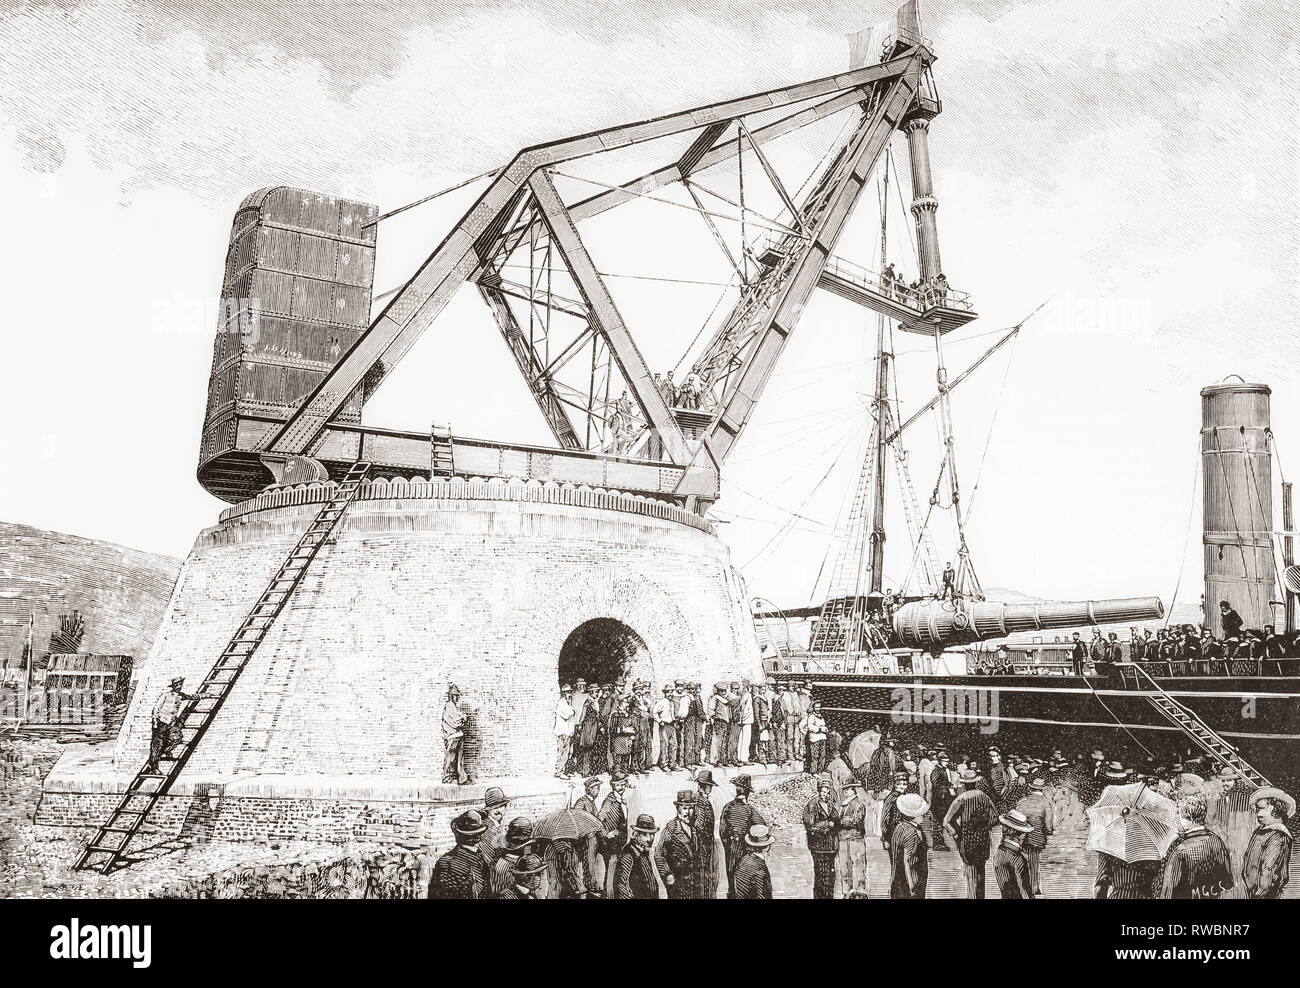 La 160 ton macchina idraulica presso l'arsenale di La Spezia base navale, Italia, visto qui nel XIX secolo. Da La Ilustracion Artistica, pubblicato 1887. Foto Stock